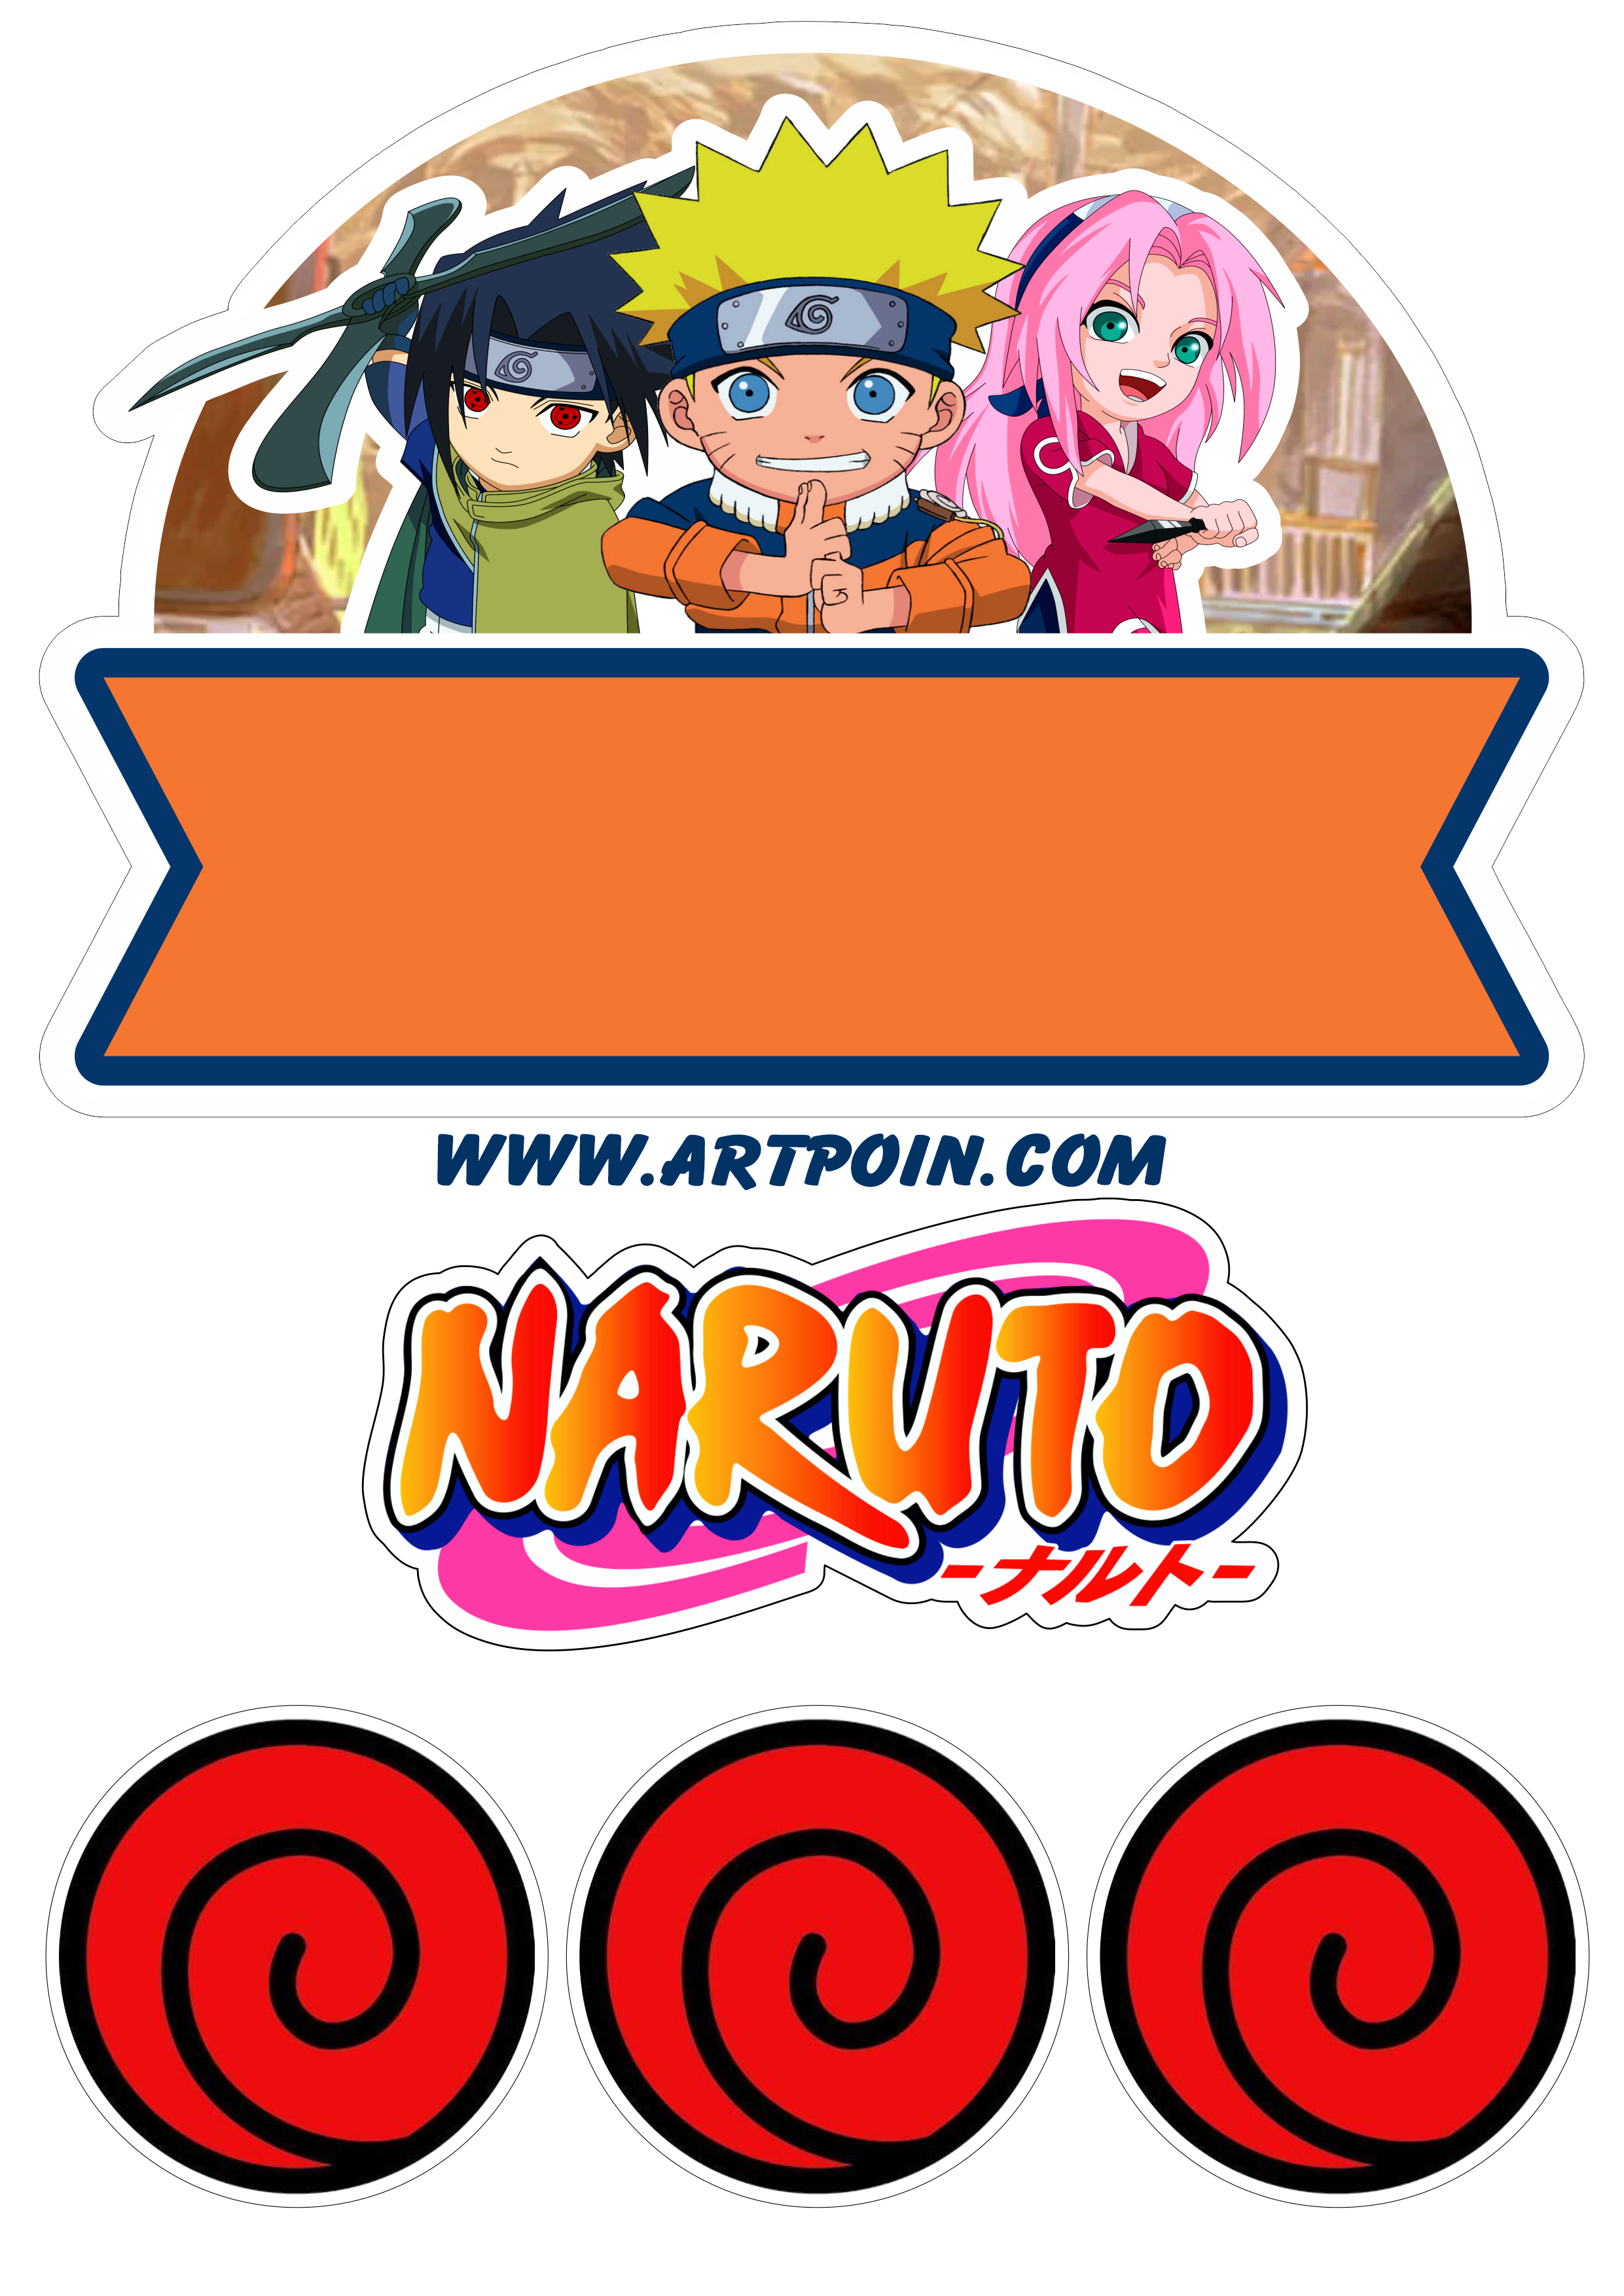 Naruto clássico topo de bolo para imprimir festa infantil Sasuke e Sakura  time 7 png